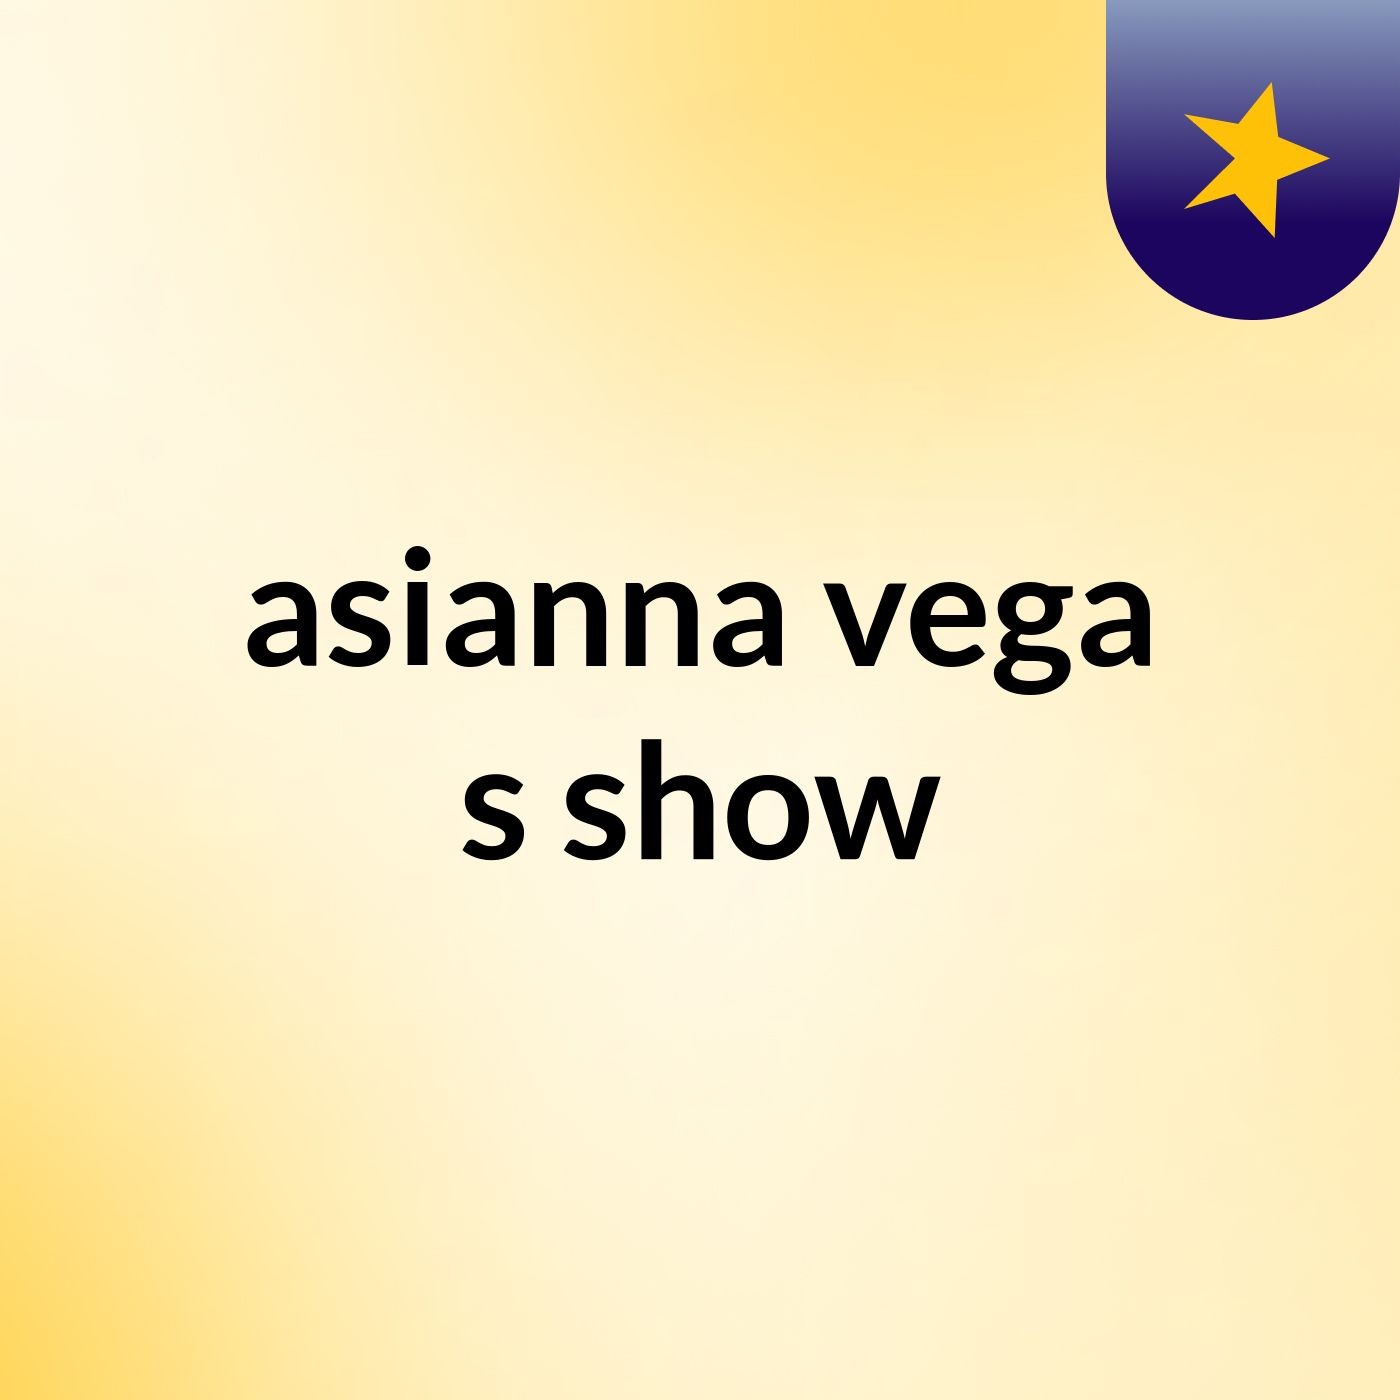 asianna vega's show